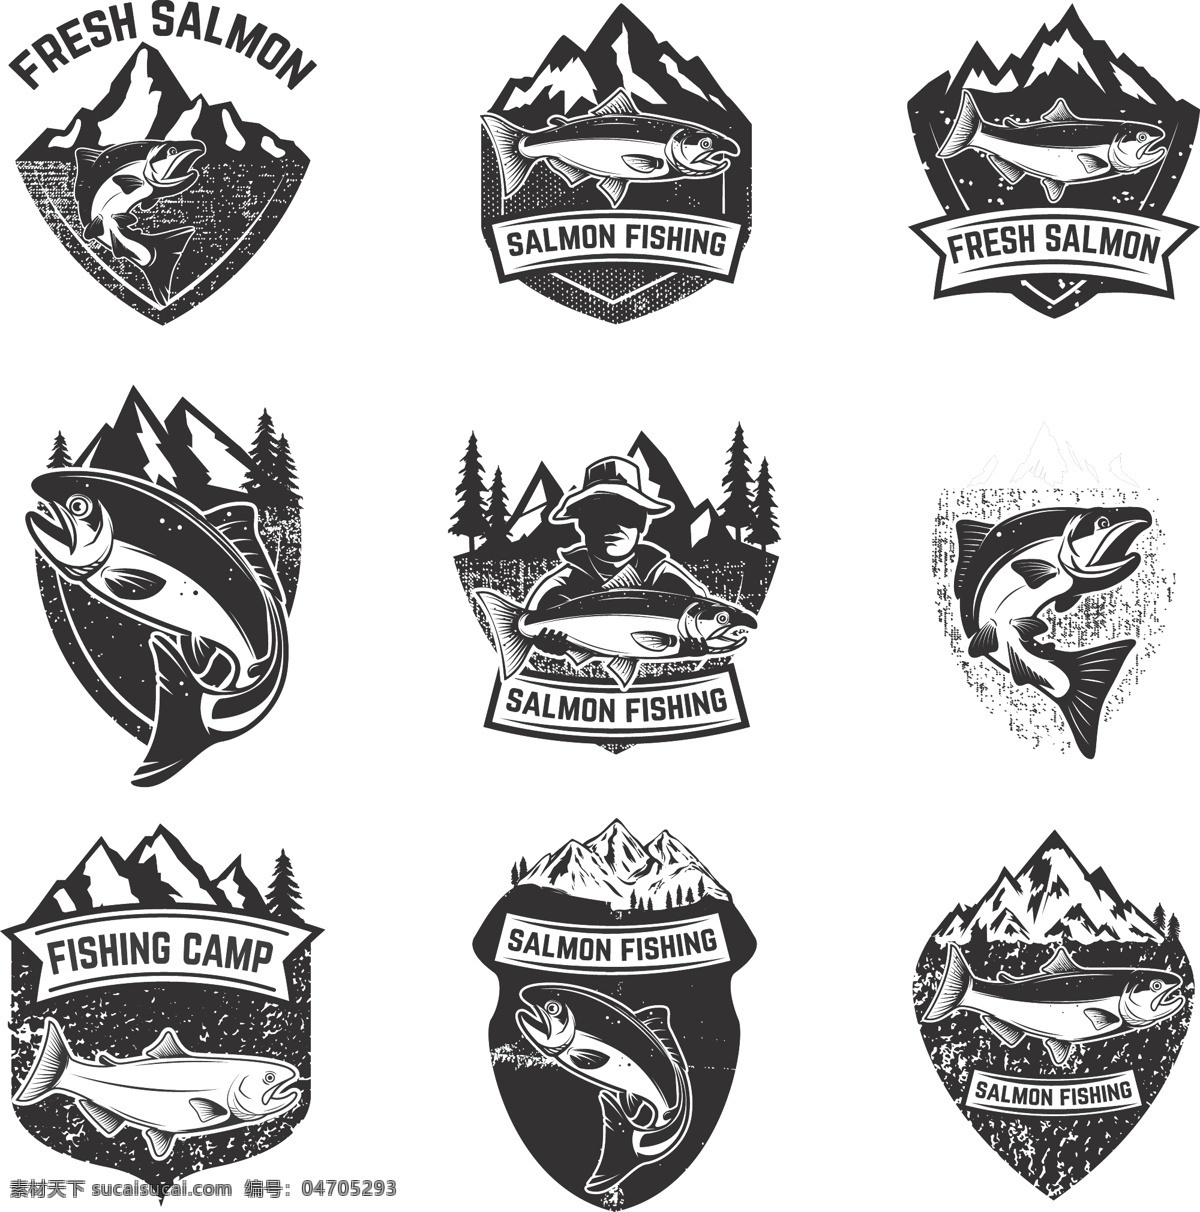 钓鱼 俱乐部 标志 矢量素材 矢量图 设计素材 创意设计 标志设计 矢量 高清图片